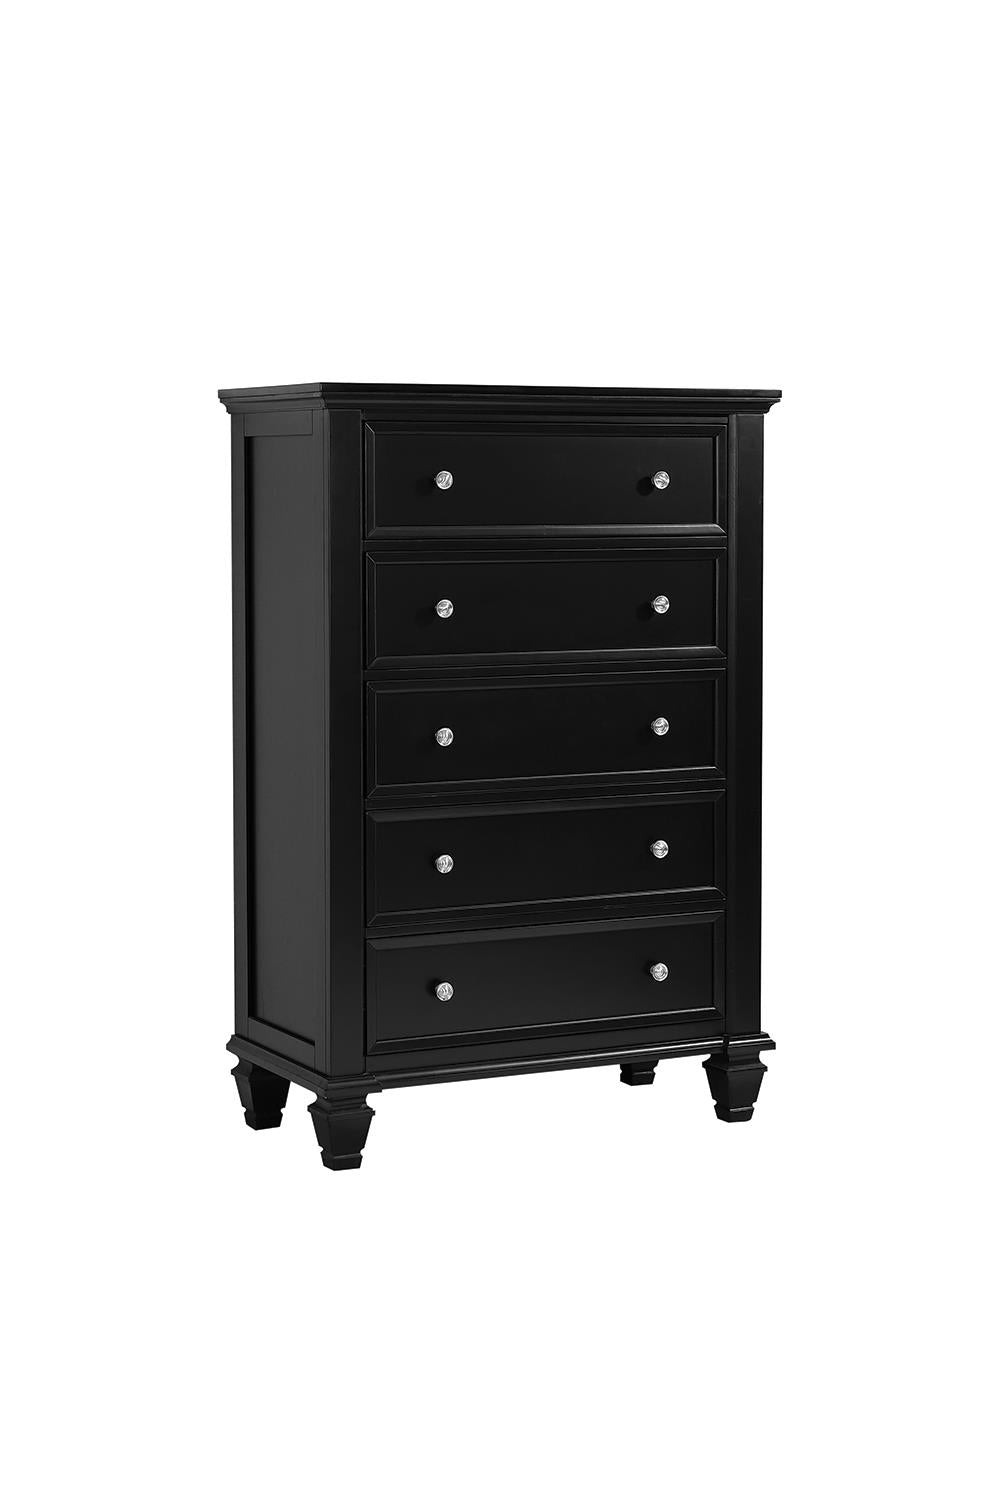 Sandy Beach 5-drawer Chest Black  Half Price Furniture